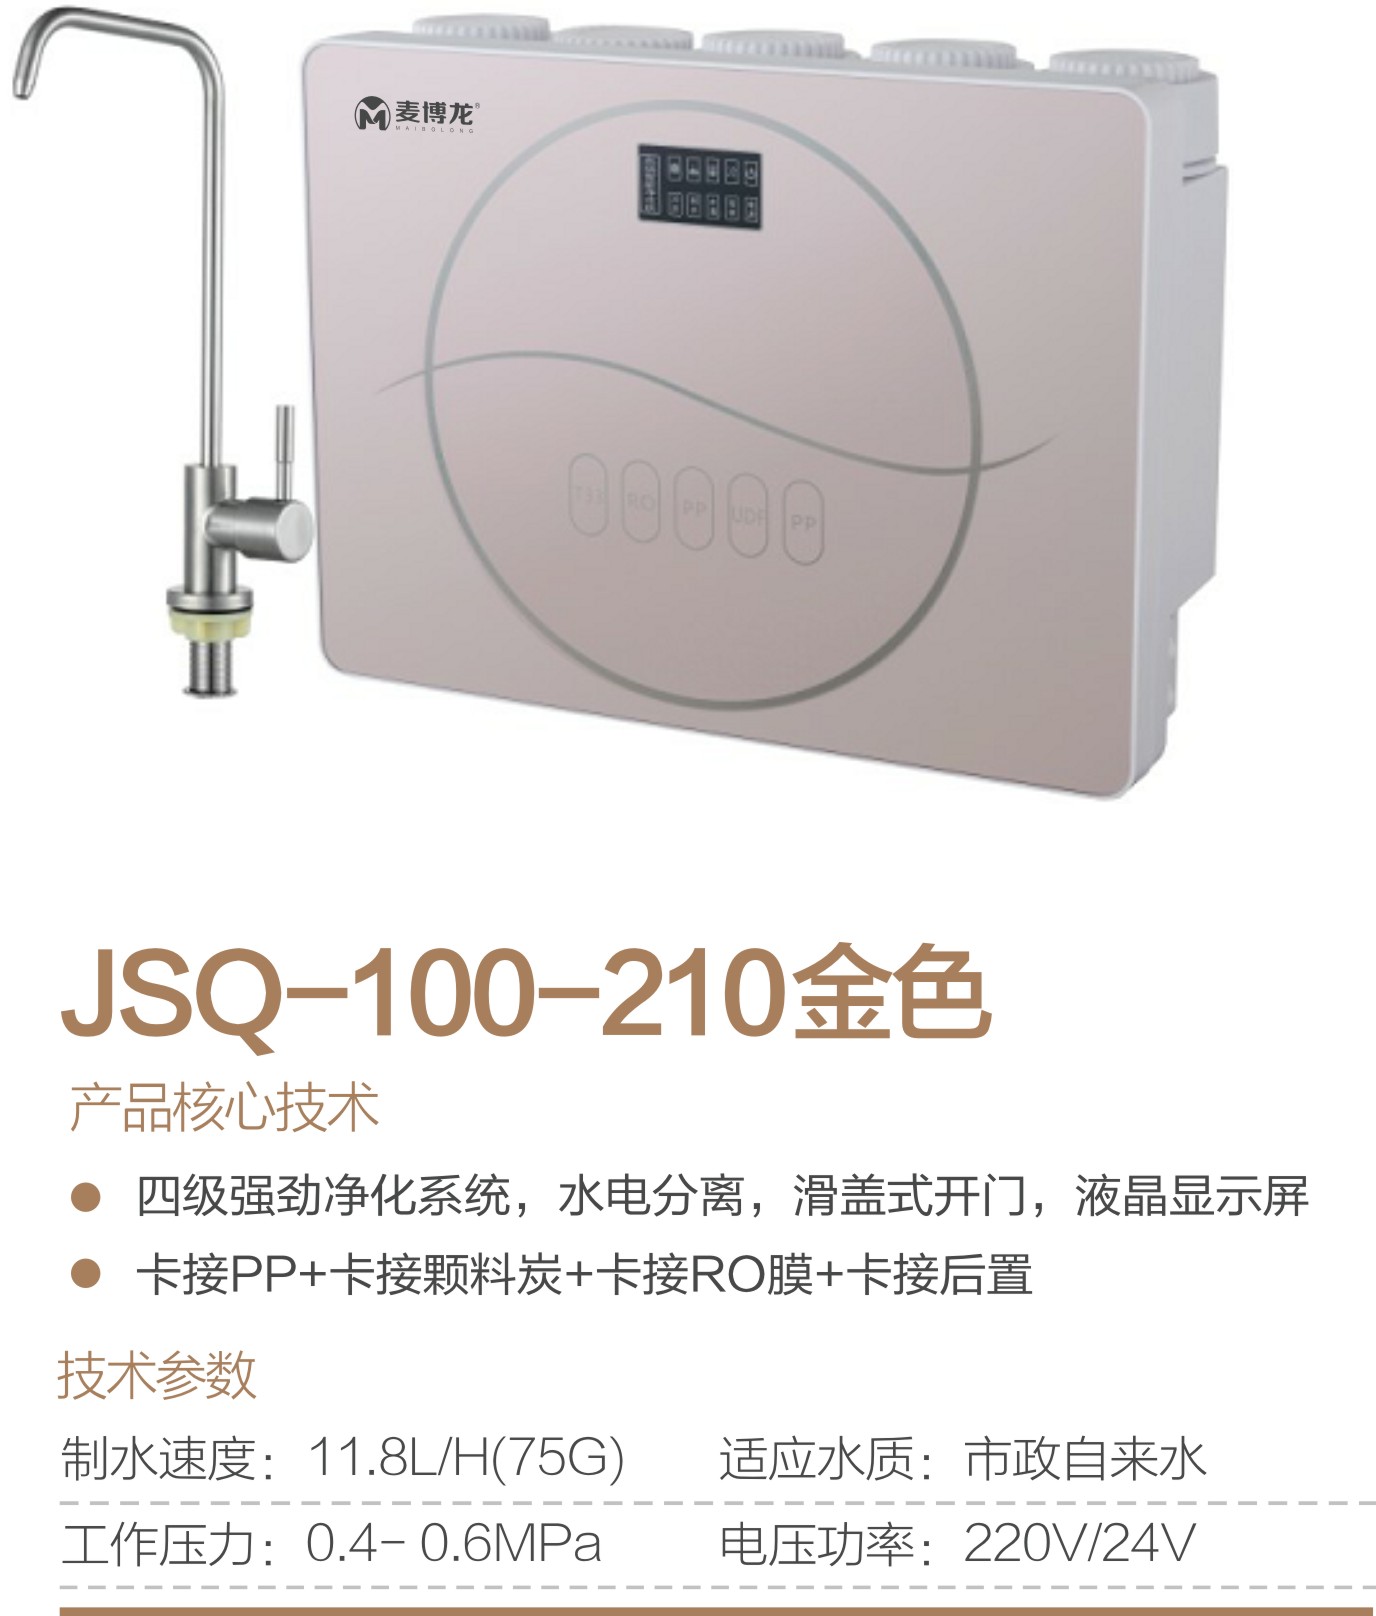 JSQ-100-210金色